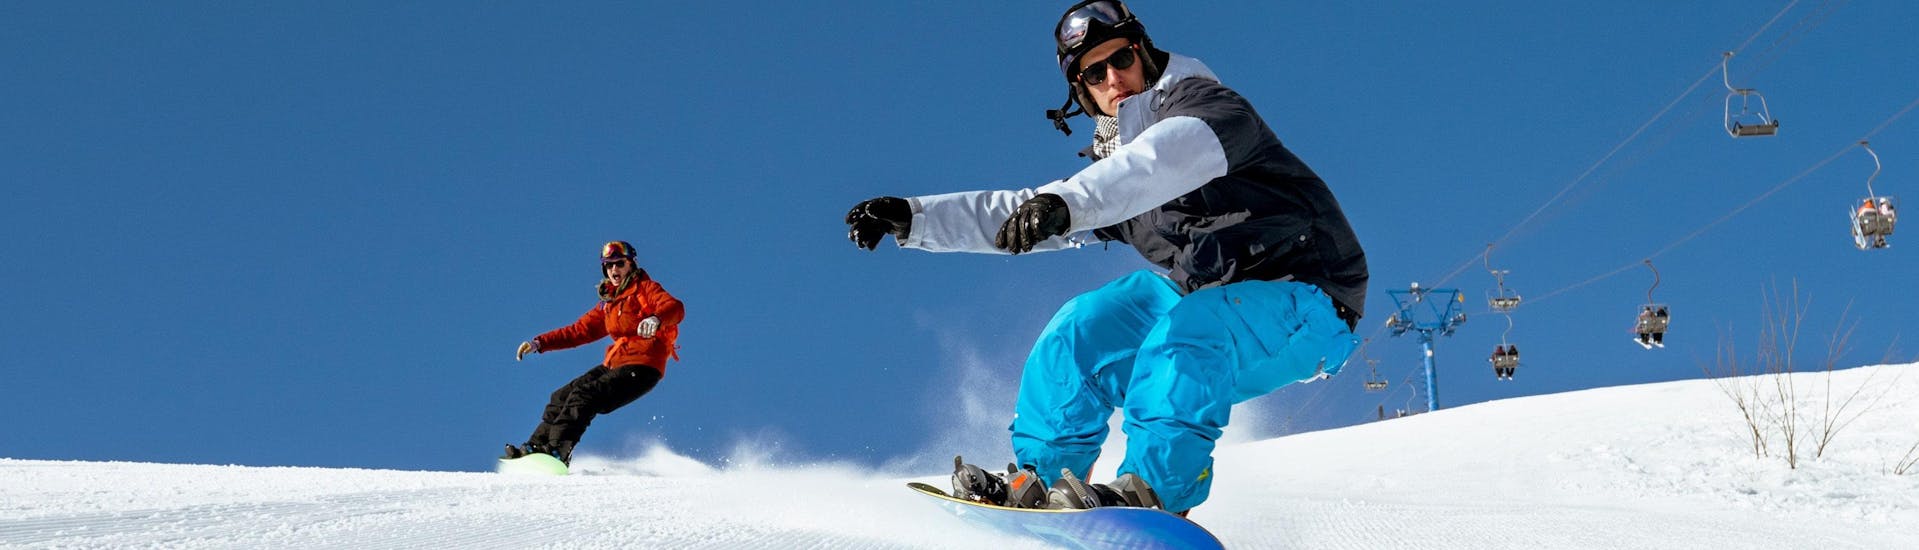 Twee snowboarders racen over een vers aangelegde piste tijdens hun snowboardlessen in Engadin.